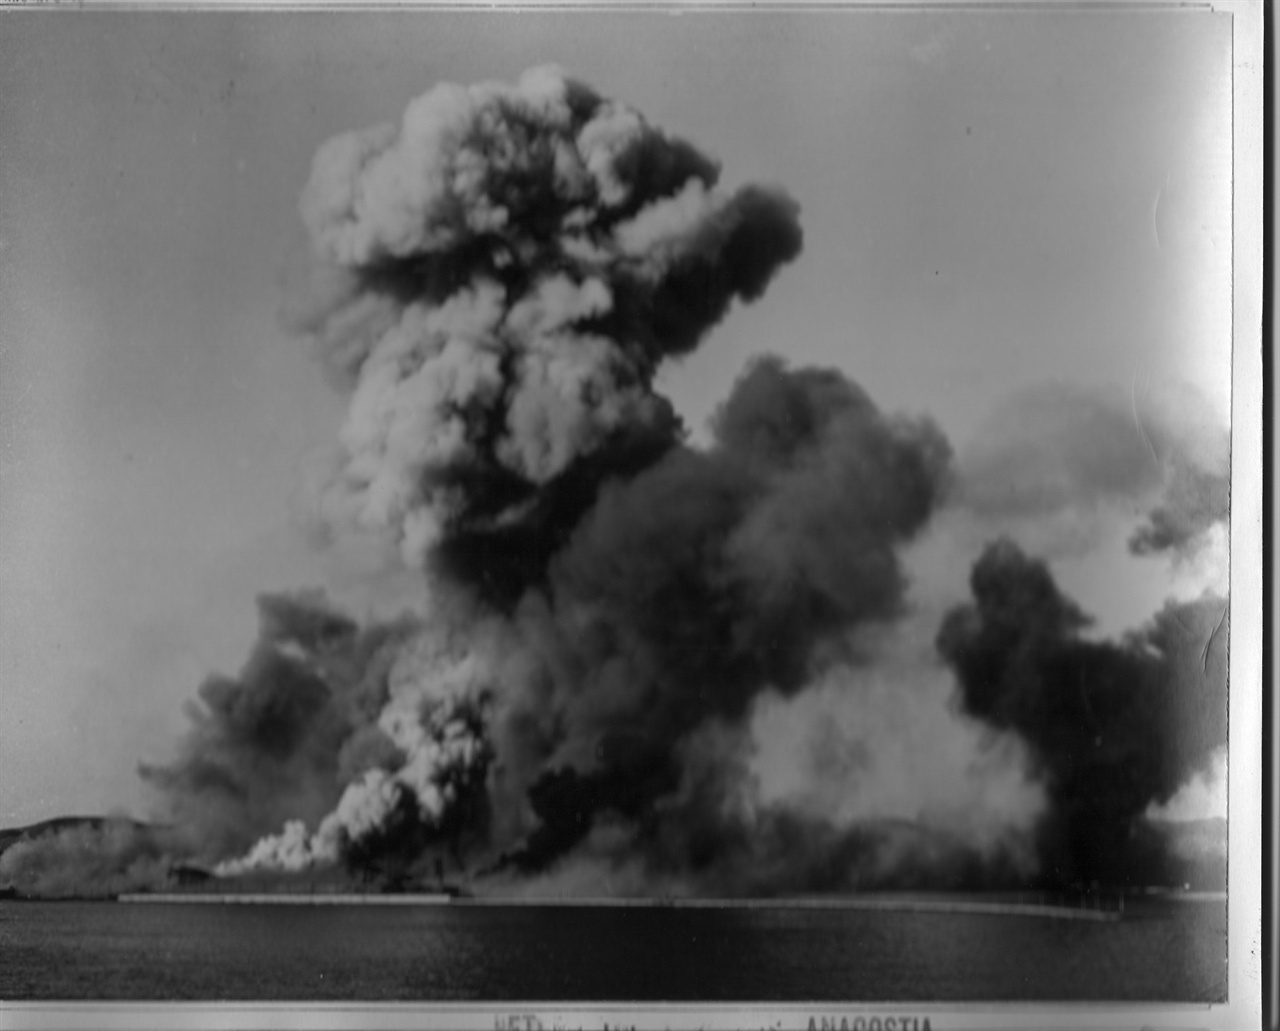  1950. 12. 24. 흥남철수작전 완료 뒤 유엔군이 함포사격과 공중폭격으로 흥남부두를 폭파하고 있다